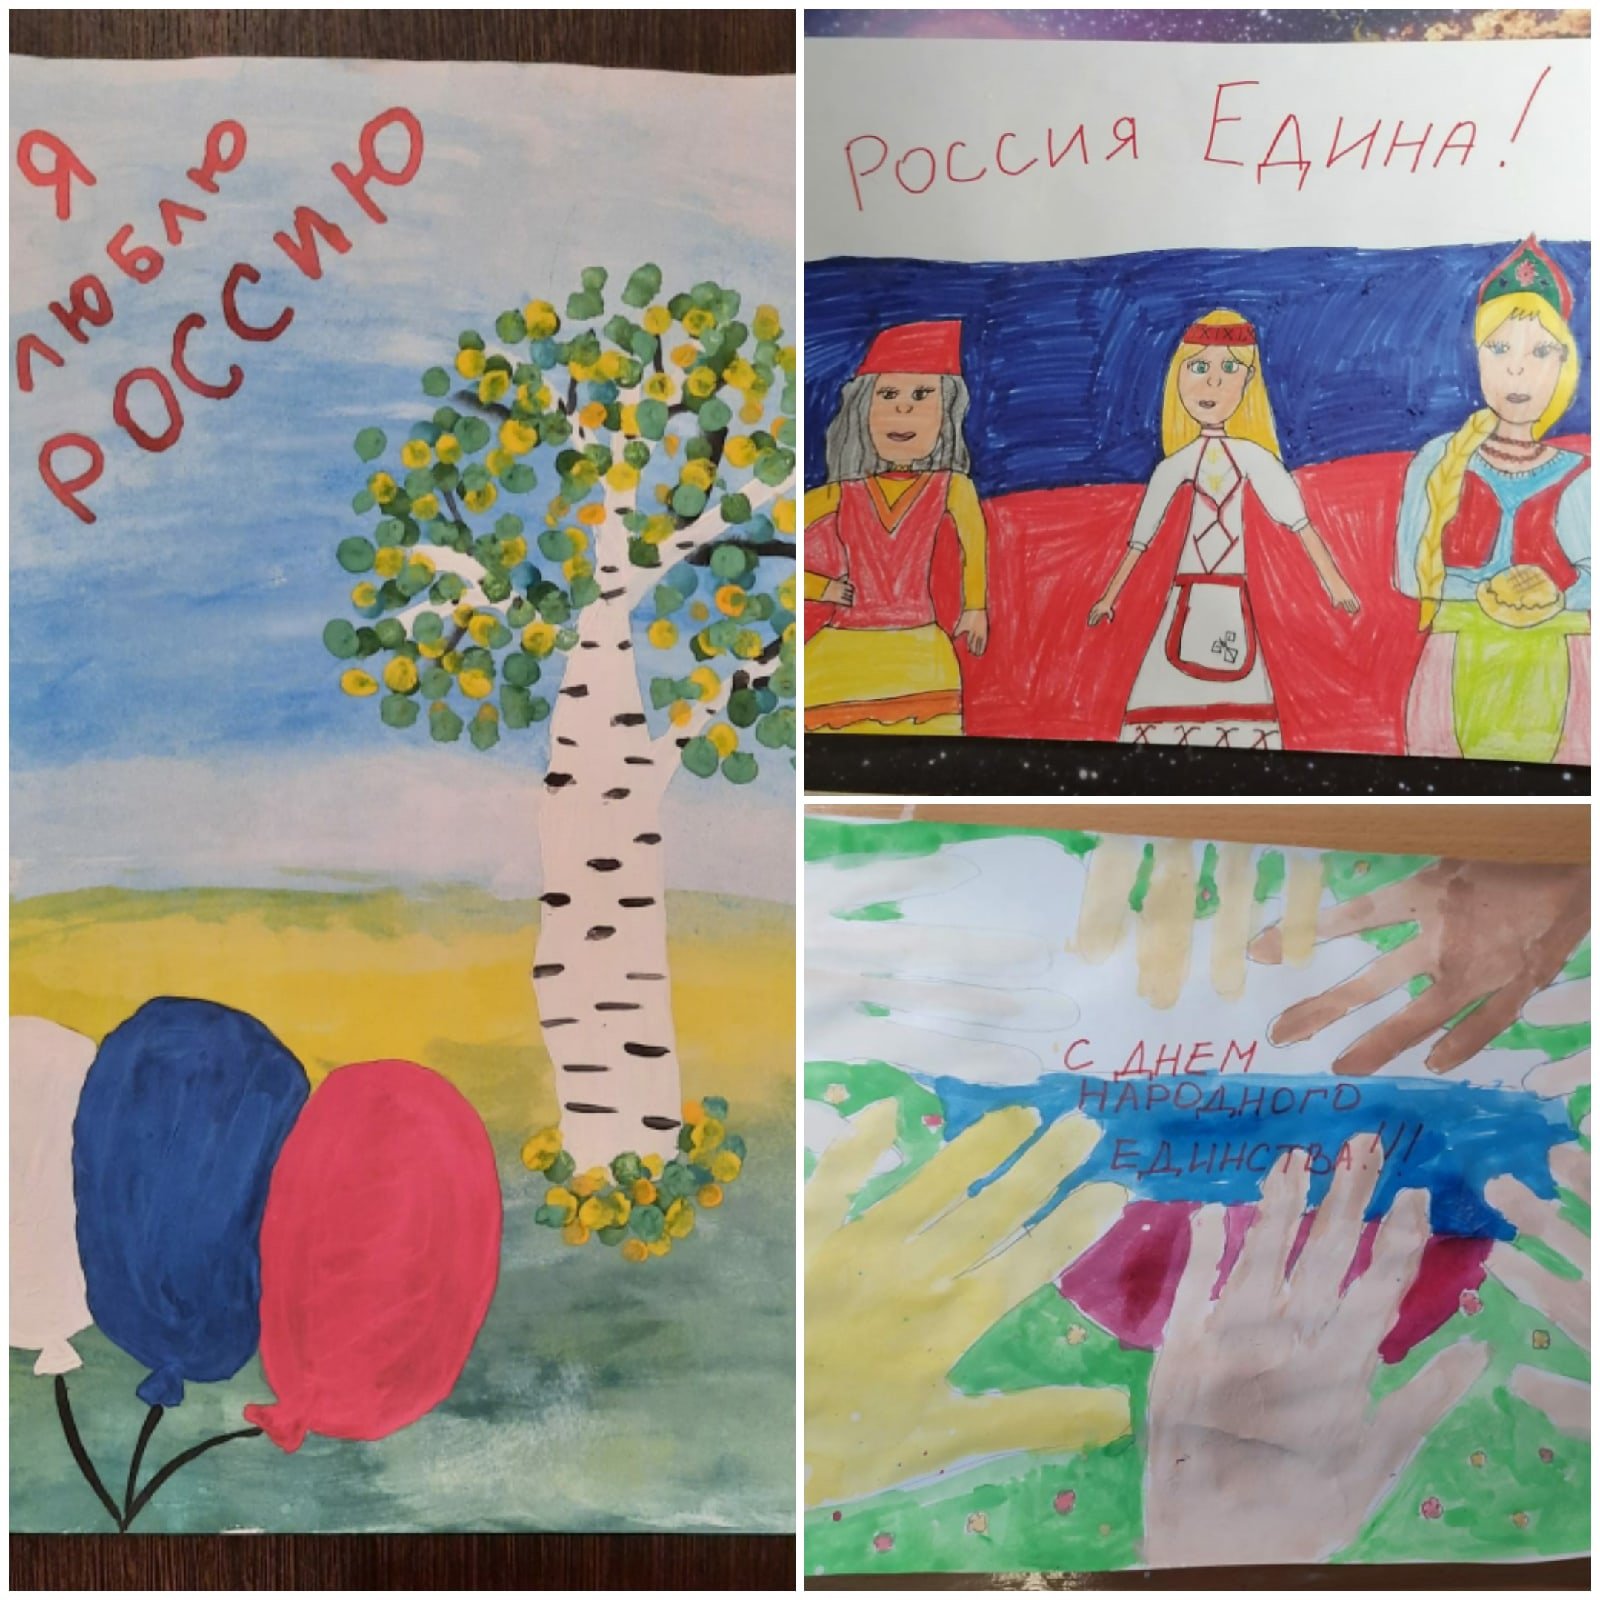 Картинки на день единства народов дагестана рисунок